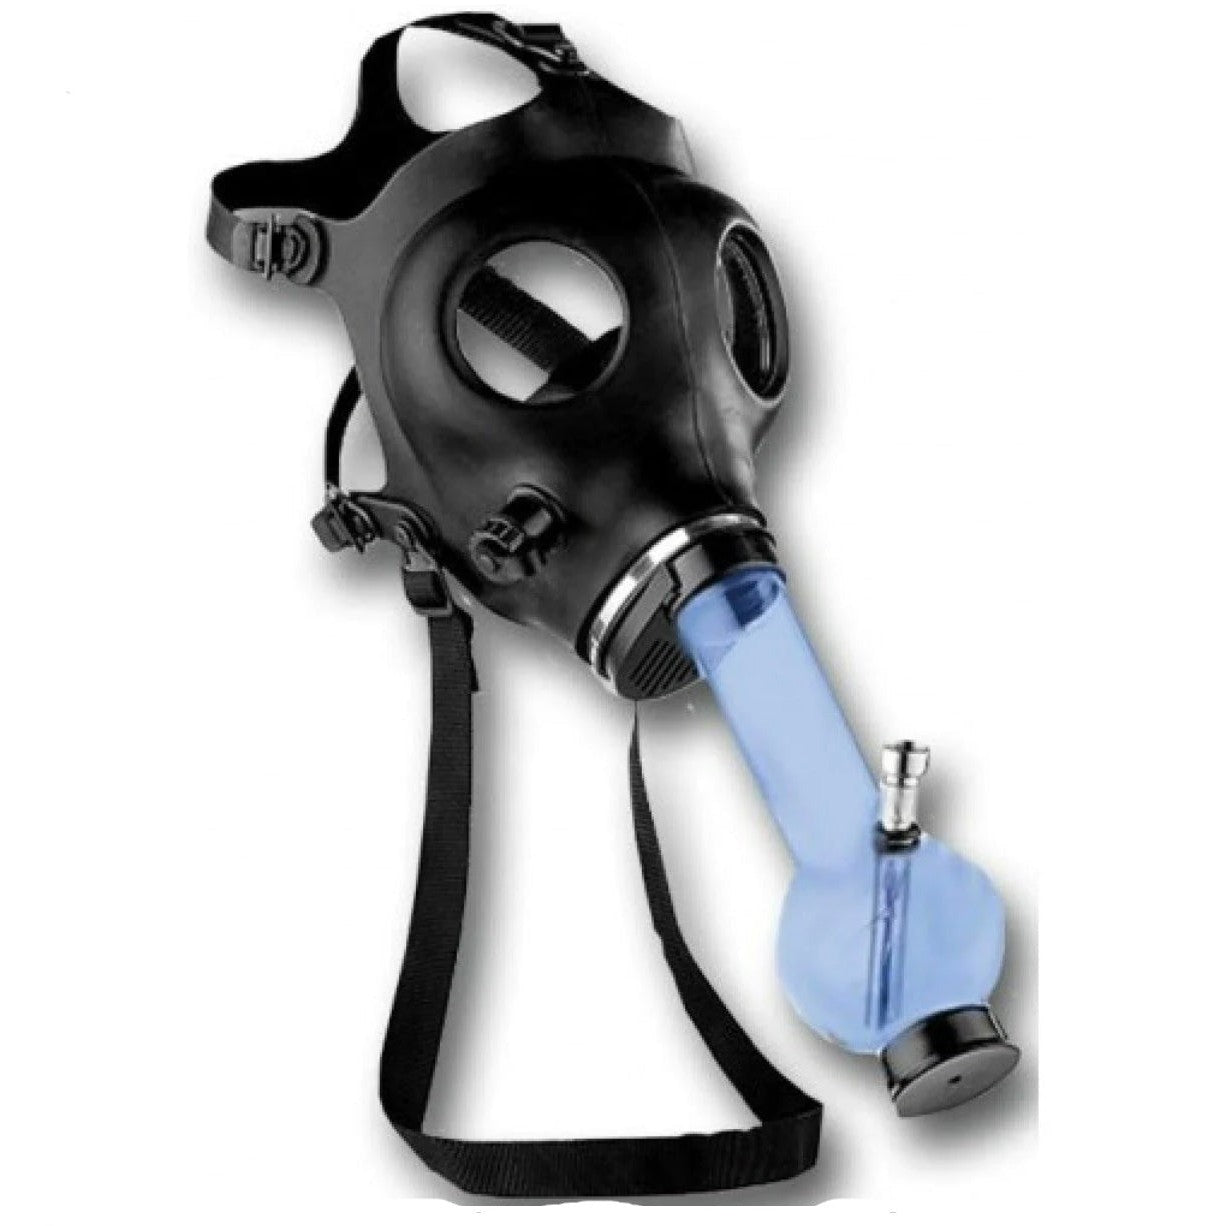 Gas Mask